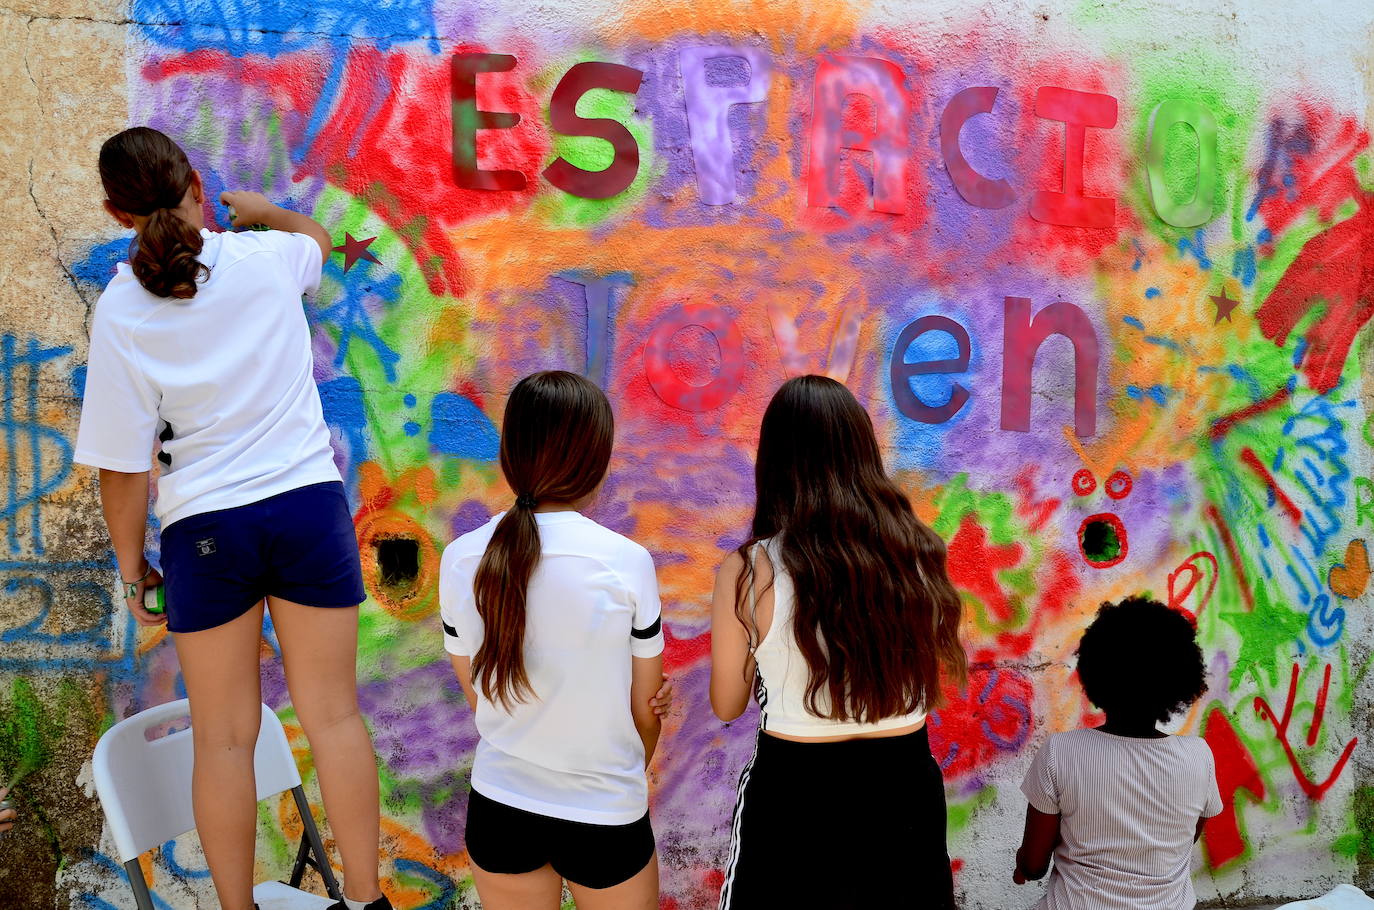 La juventud de Huétor Vega ha hecho hoy un grafiti en el Espacio Joven.